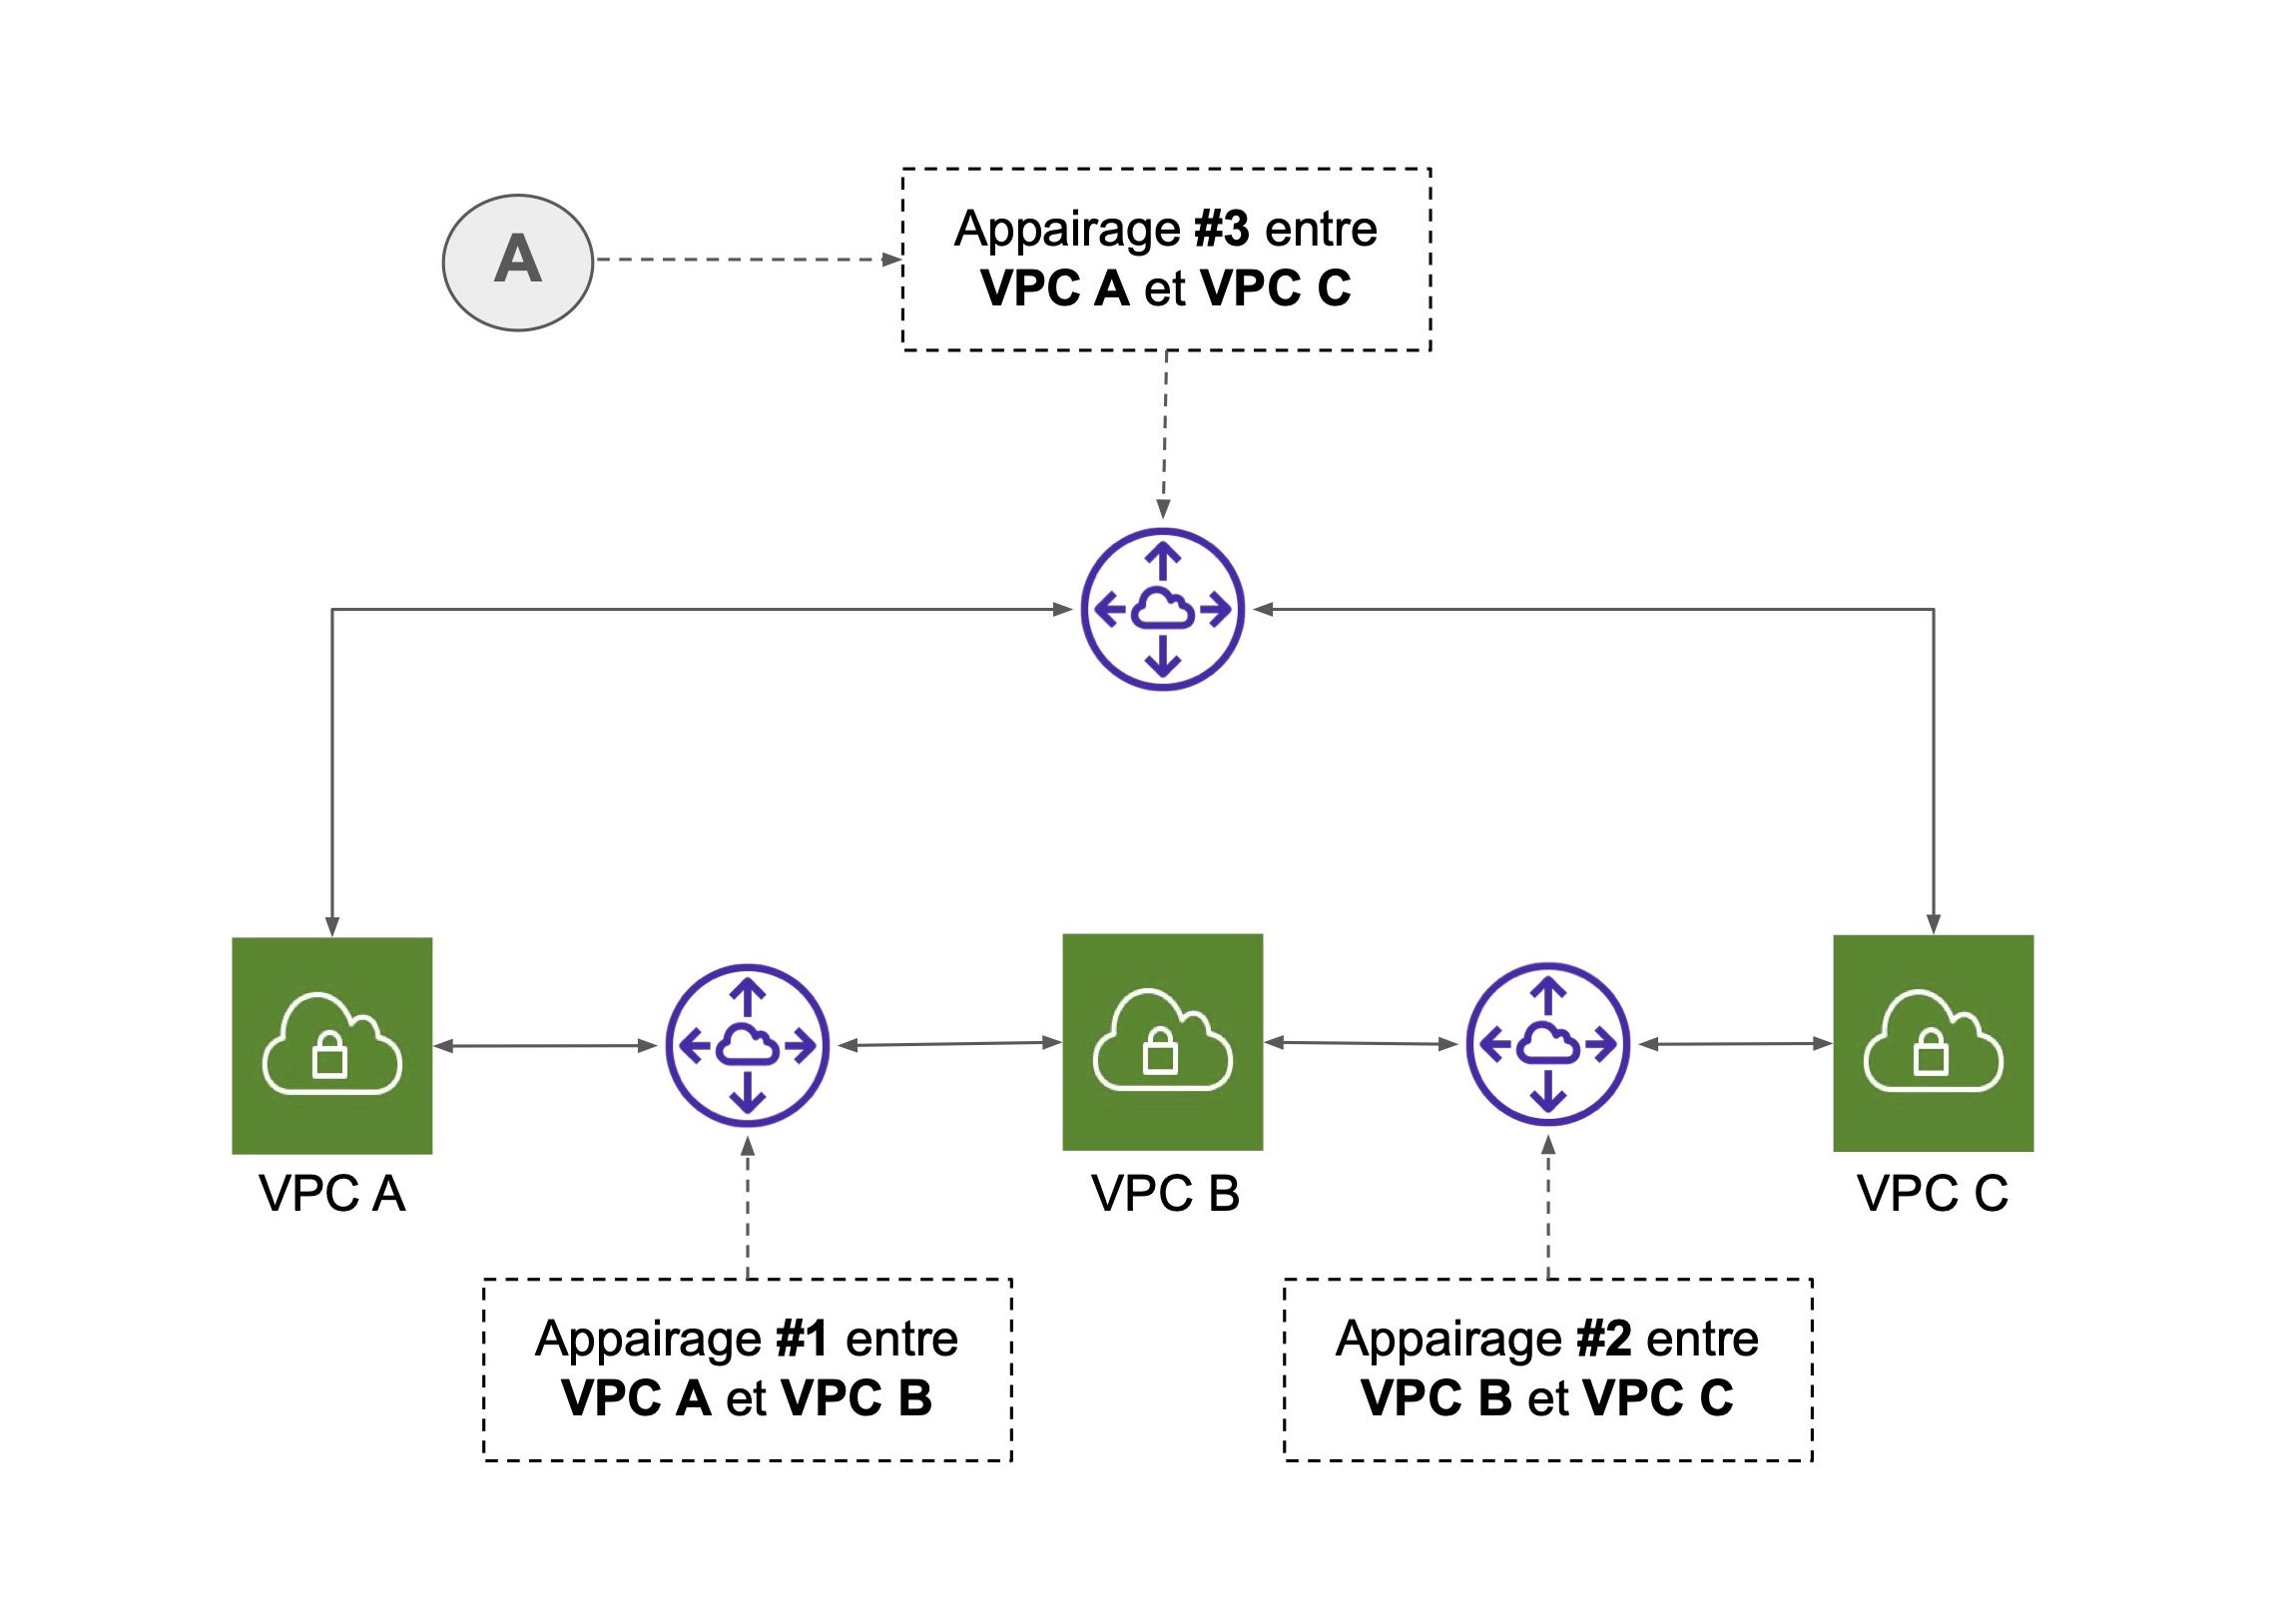 Appairage entre plusieurs VPC. A - Un appairage de VPC n’est pas transitif, VPC A et VPC C ne peuvent pas utiliser les appairages #1 et #2 pour communiquer.